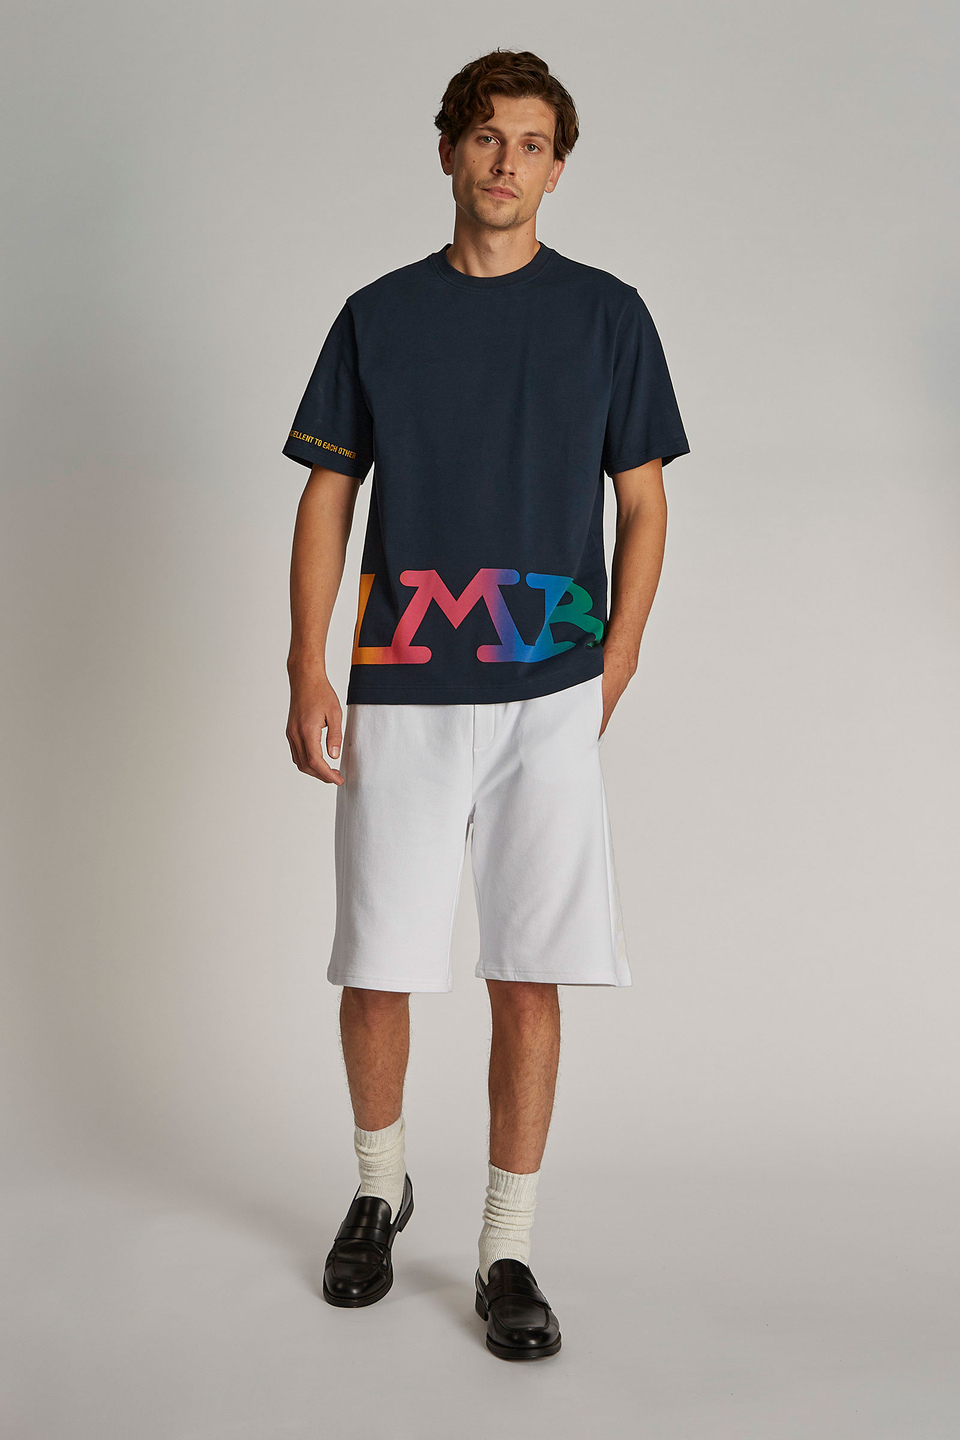 T-shirt da uomo a maniche corte modello over | La Martina - Official Online Shop